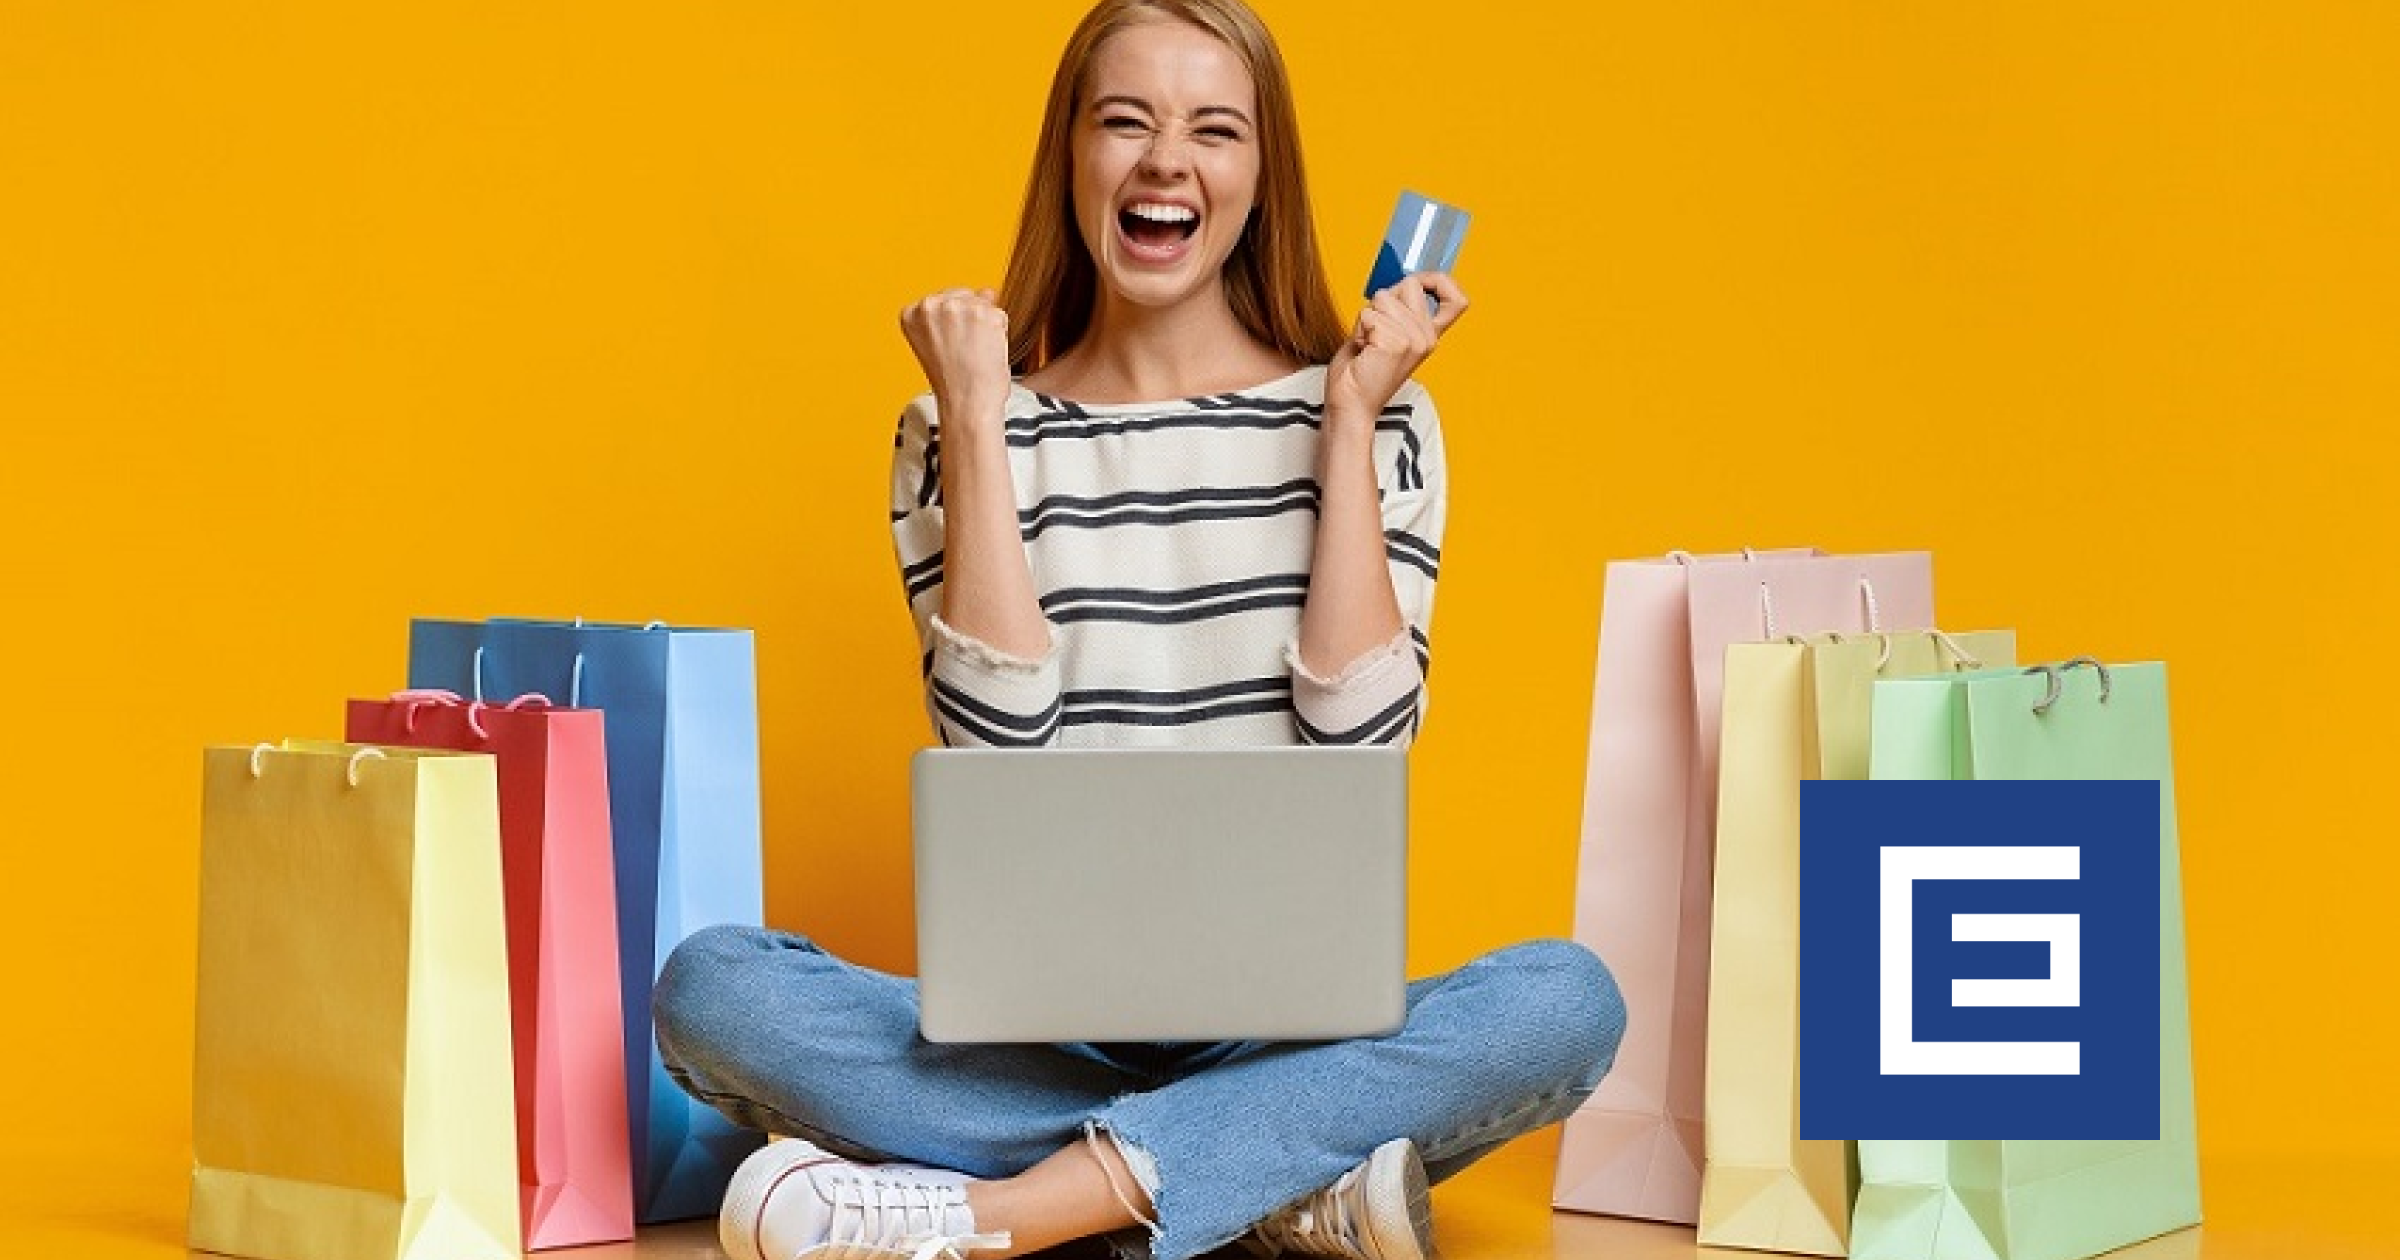 Ak nákupy, tak na online trhovisku: Prečo sa oplatia?